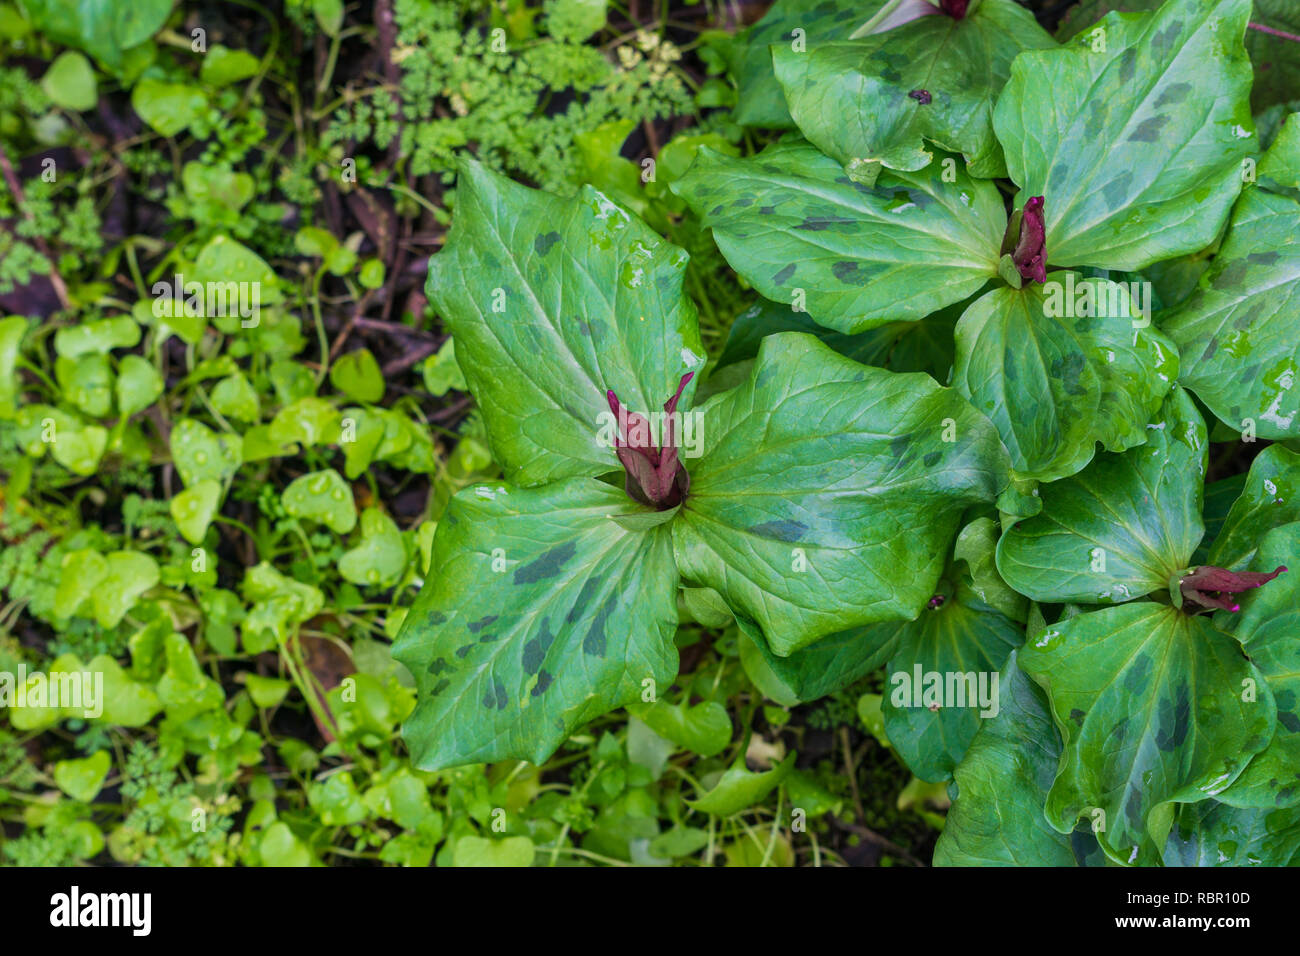 Giant trillium (Trillium chloropetalum) about to bloom, California Stock Photo